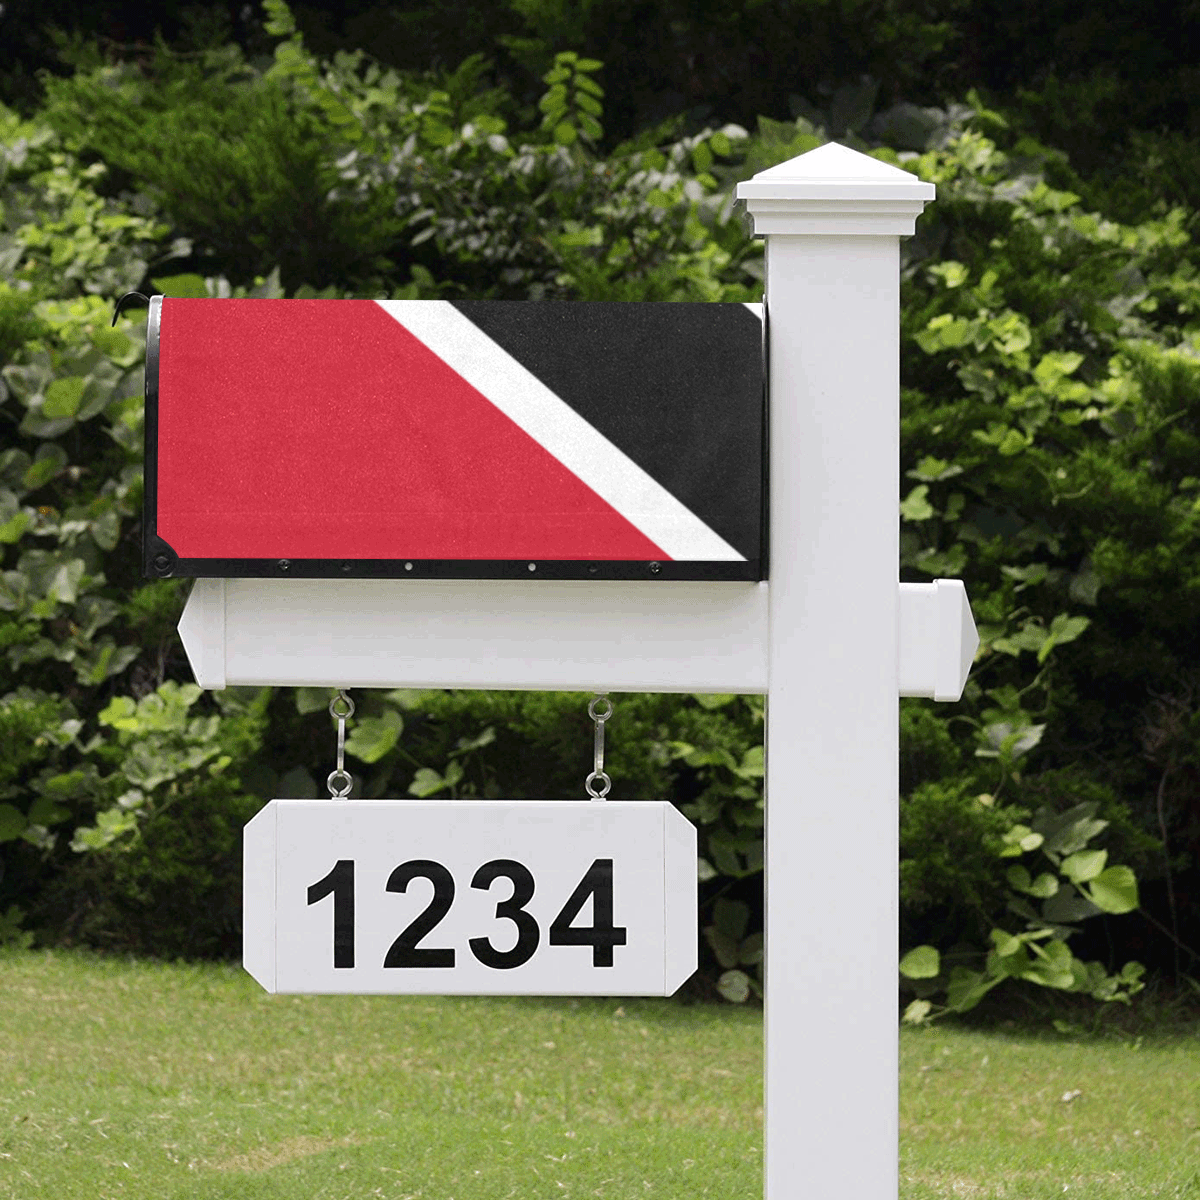 Trinidad and Tobago Mailbox Cover